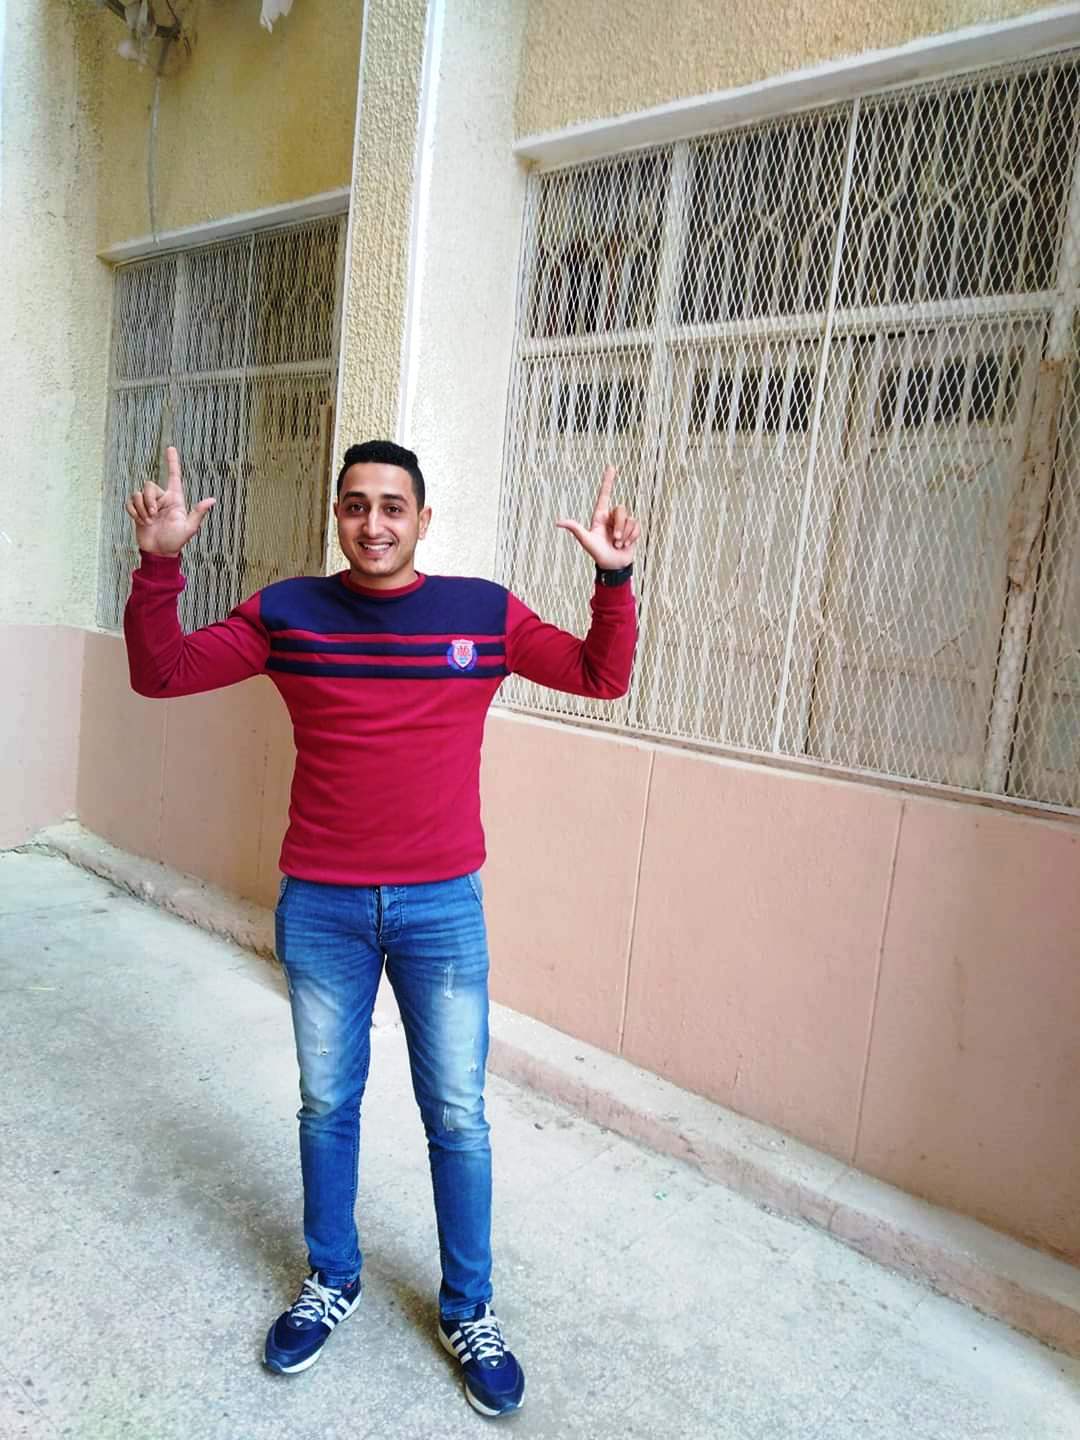 أحمد عاطف شهيد لقمة العيش الذي قتل قبل ايام من زفافه